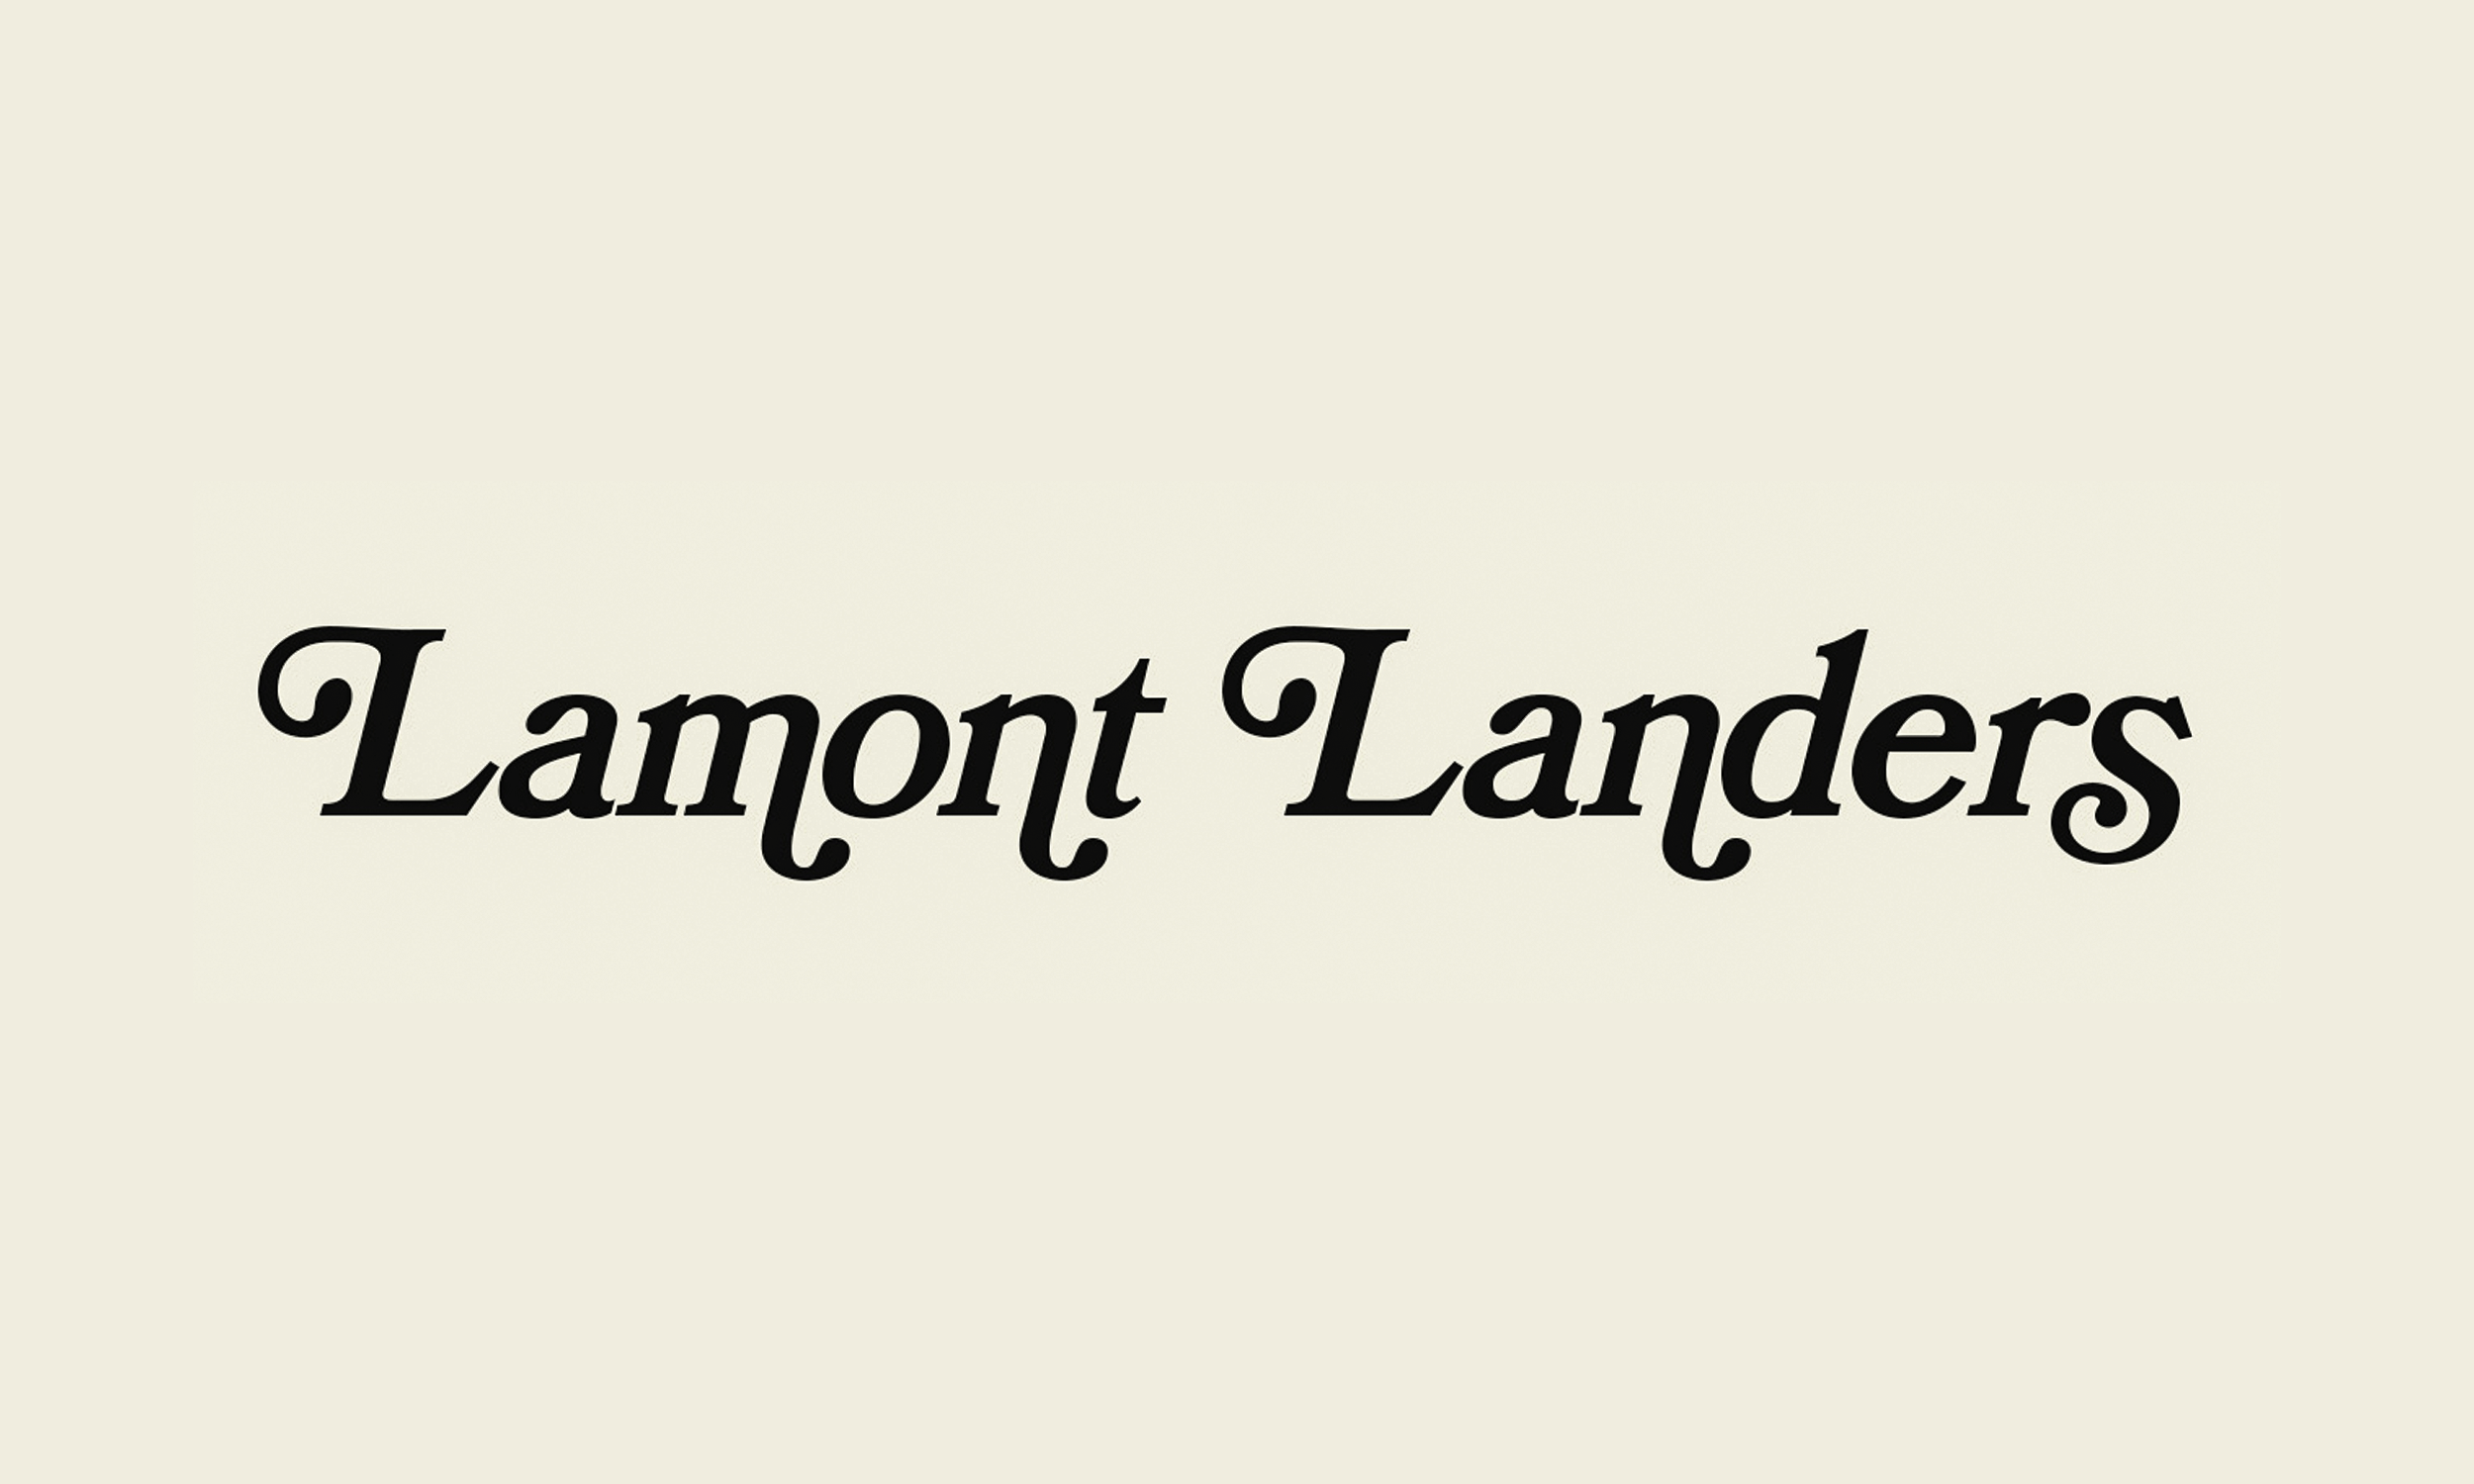 Lamont Landers